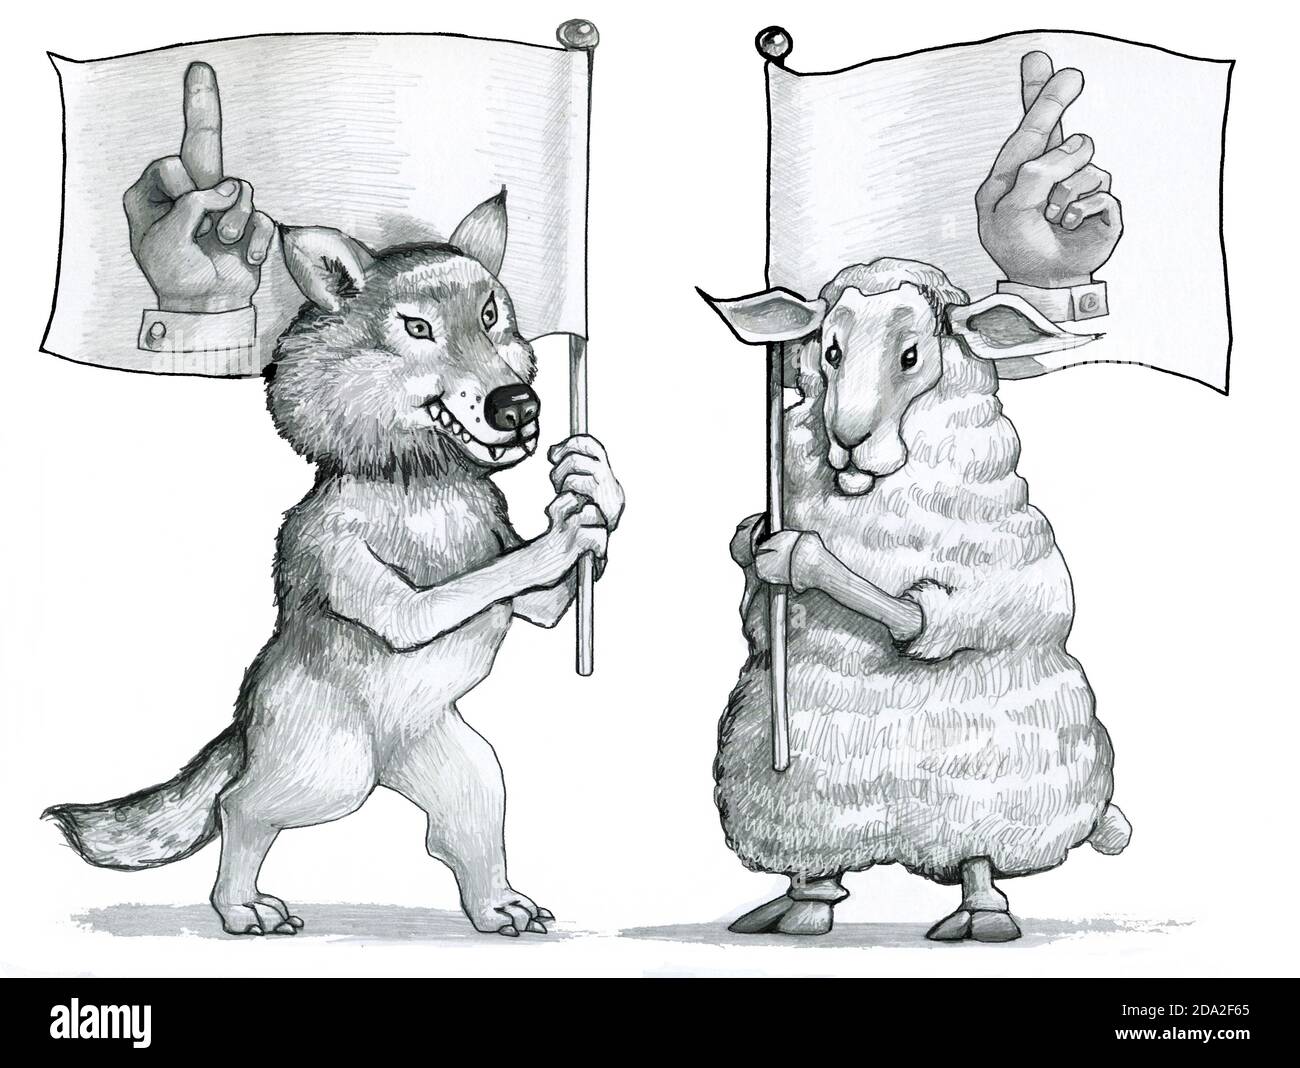 wolf tiene una bandera con una mano dibujada con el medio símbolo elevado de arrogancia con el que el barco tiene una bandera superstitiuly dedos cruzados símbolo de mansedumbre Foto de stock